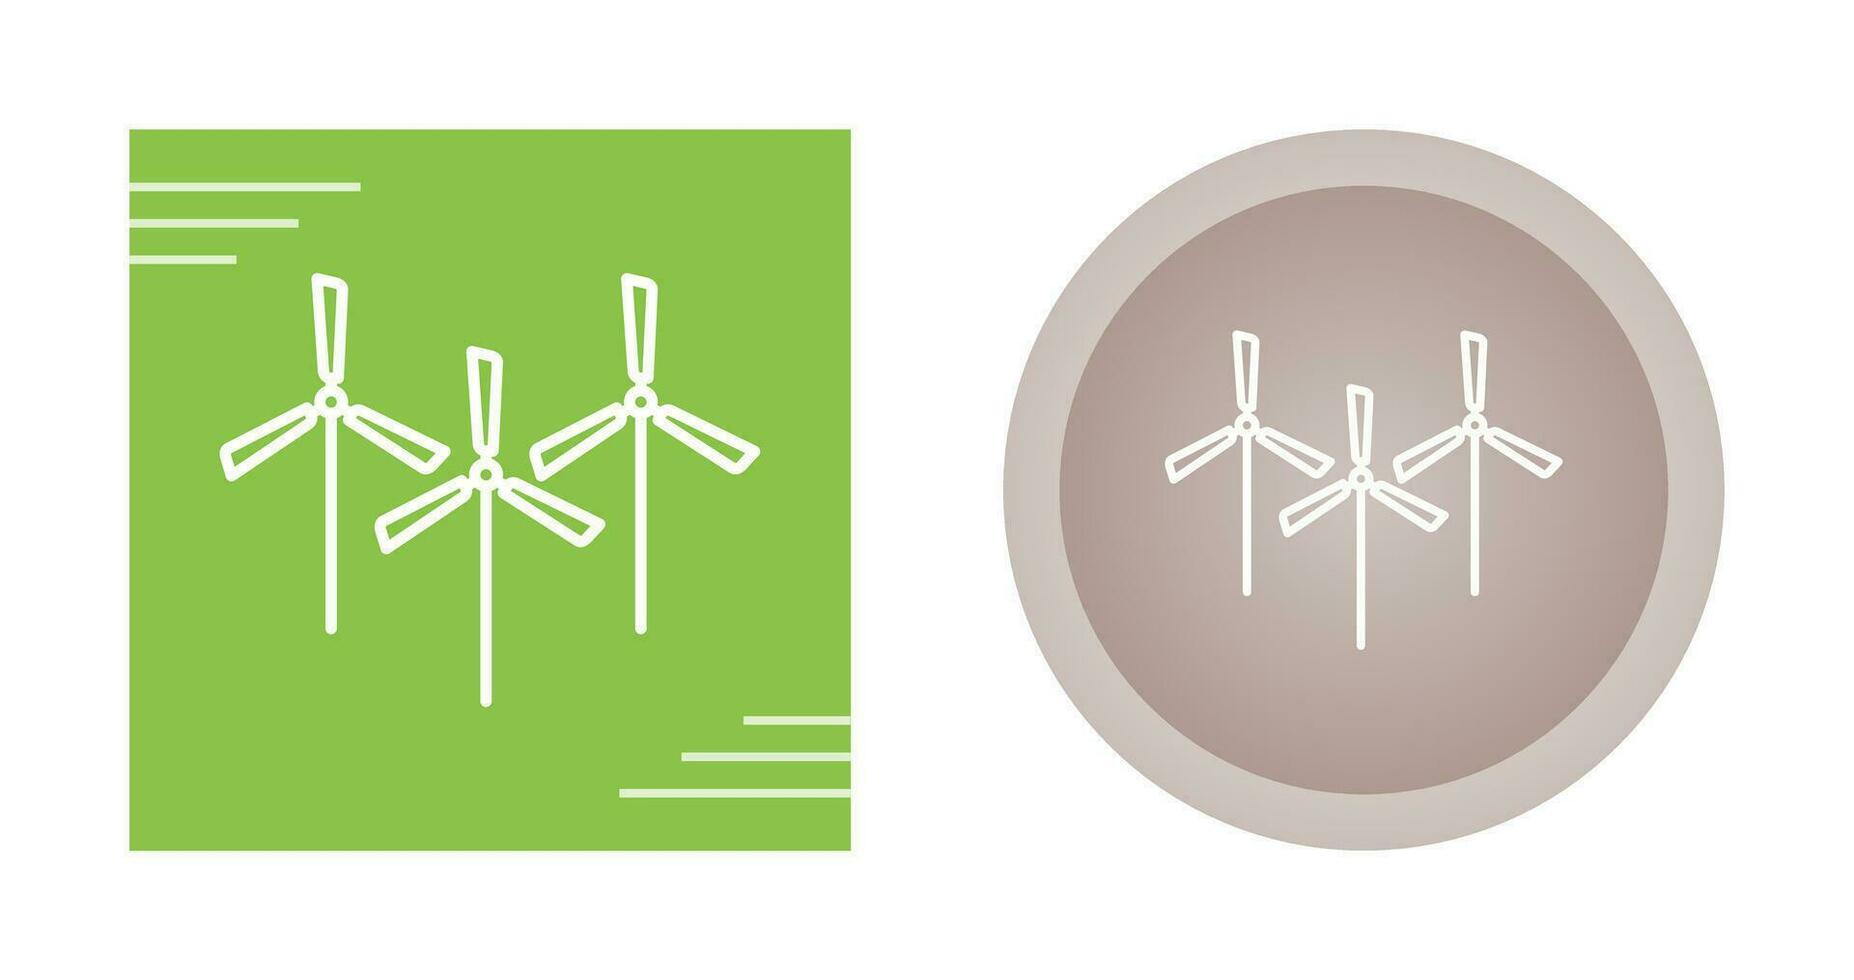 ícone de vetor de vários moinhos de vento